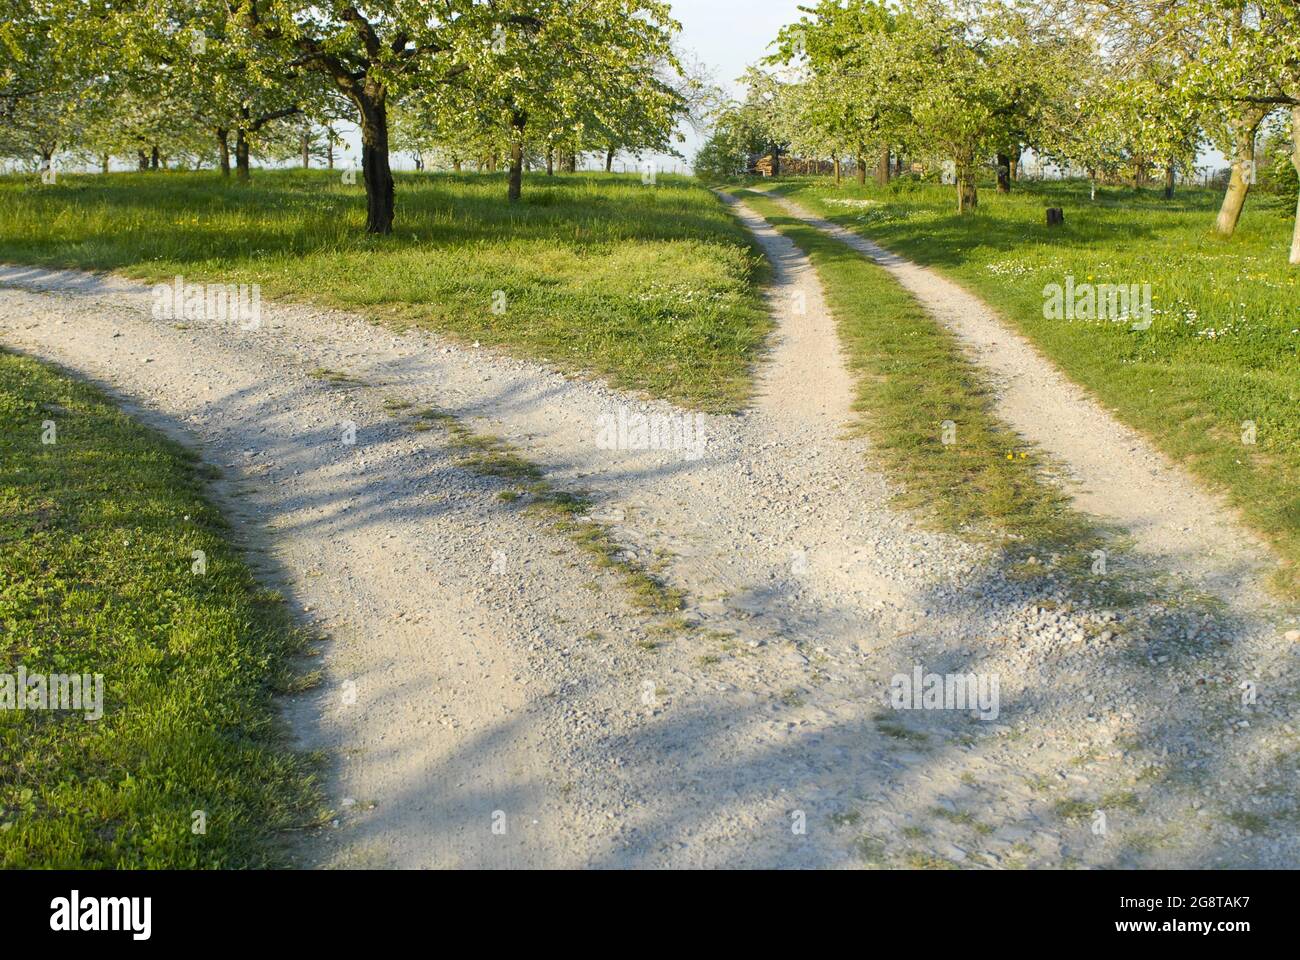 Separación de un camino en un prado de árboles frutales, Alemania, Erligheim Foto de stock